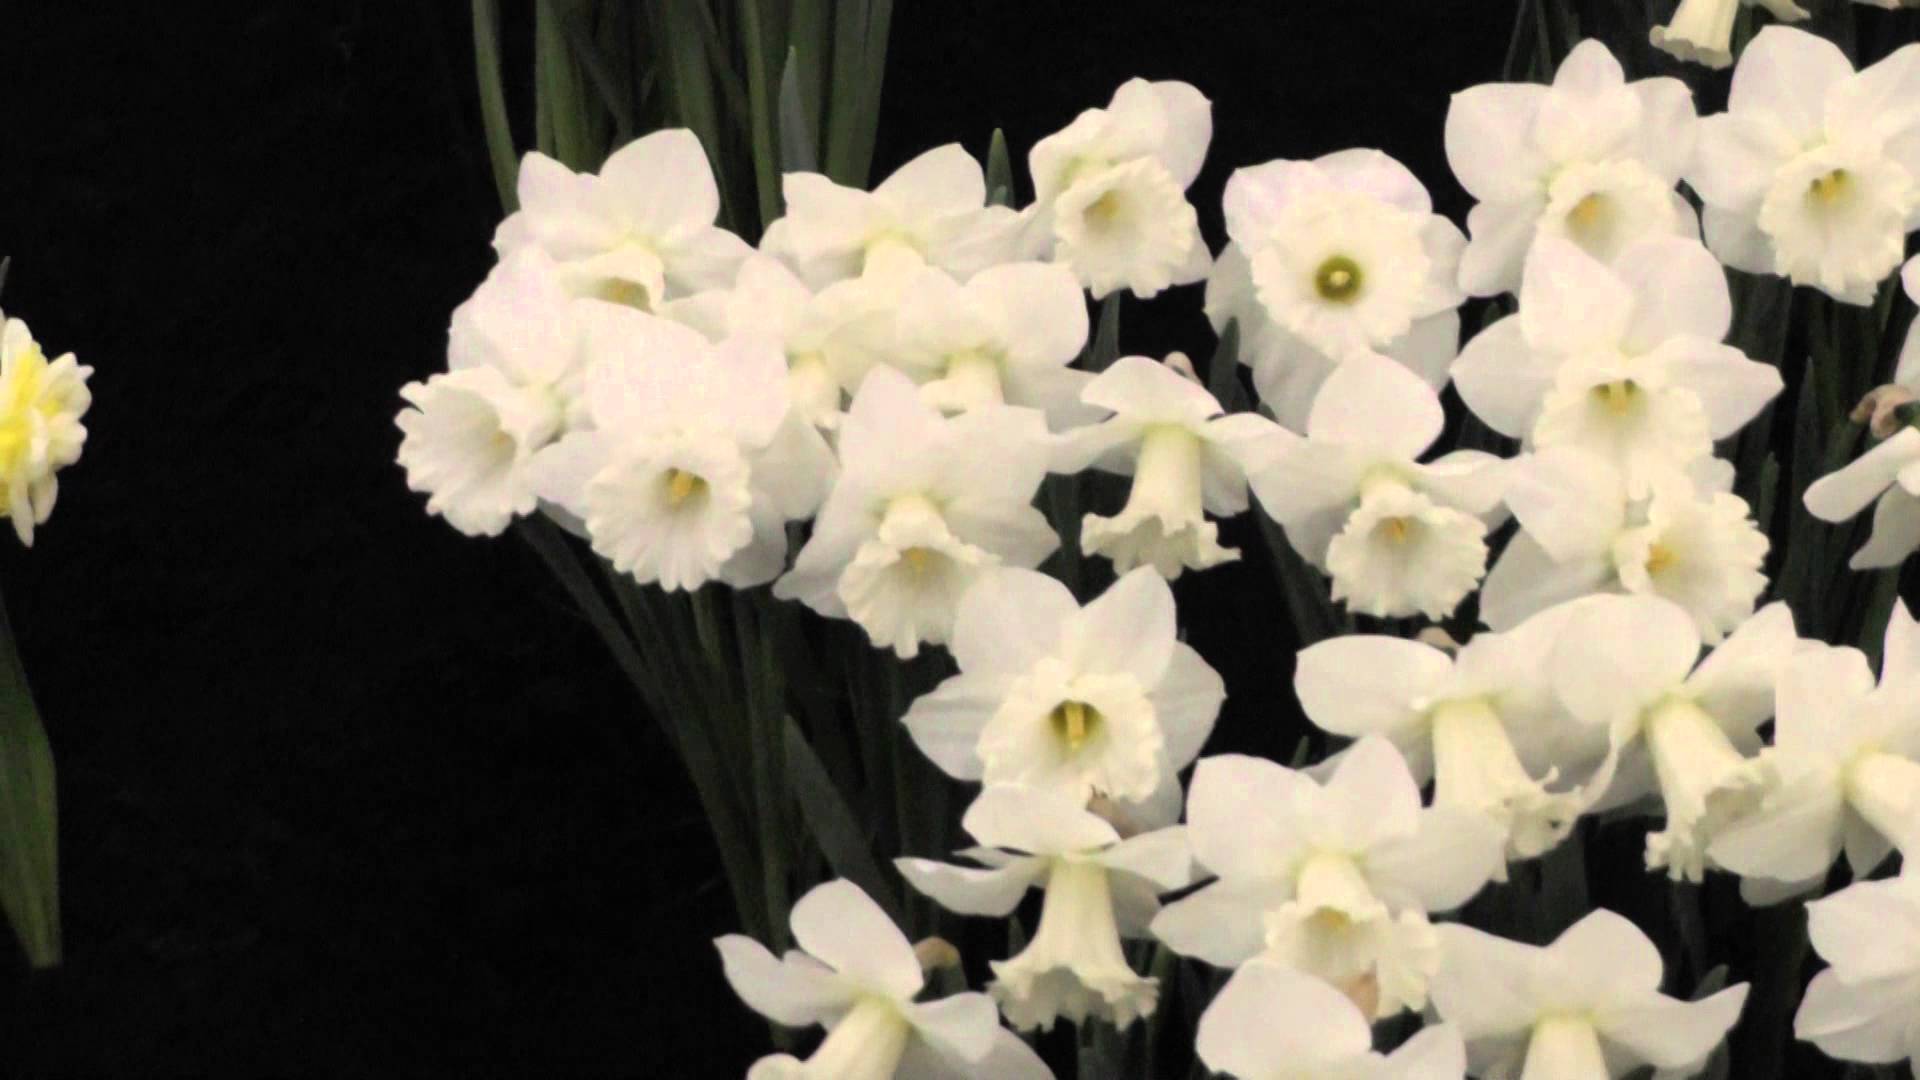 White Daffodils - Daffodil Flower Bulbs - YouTube